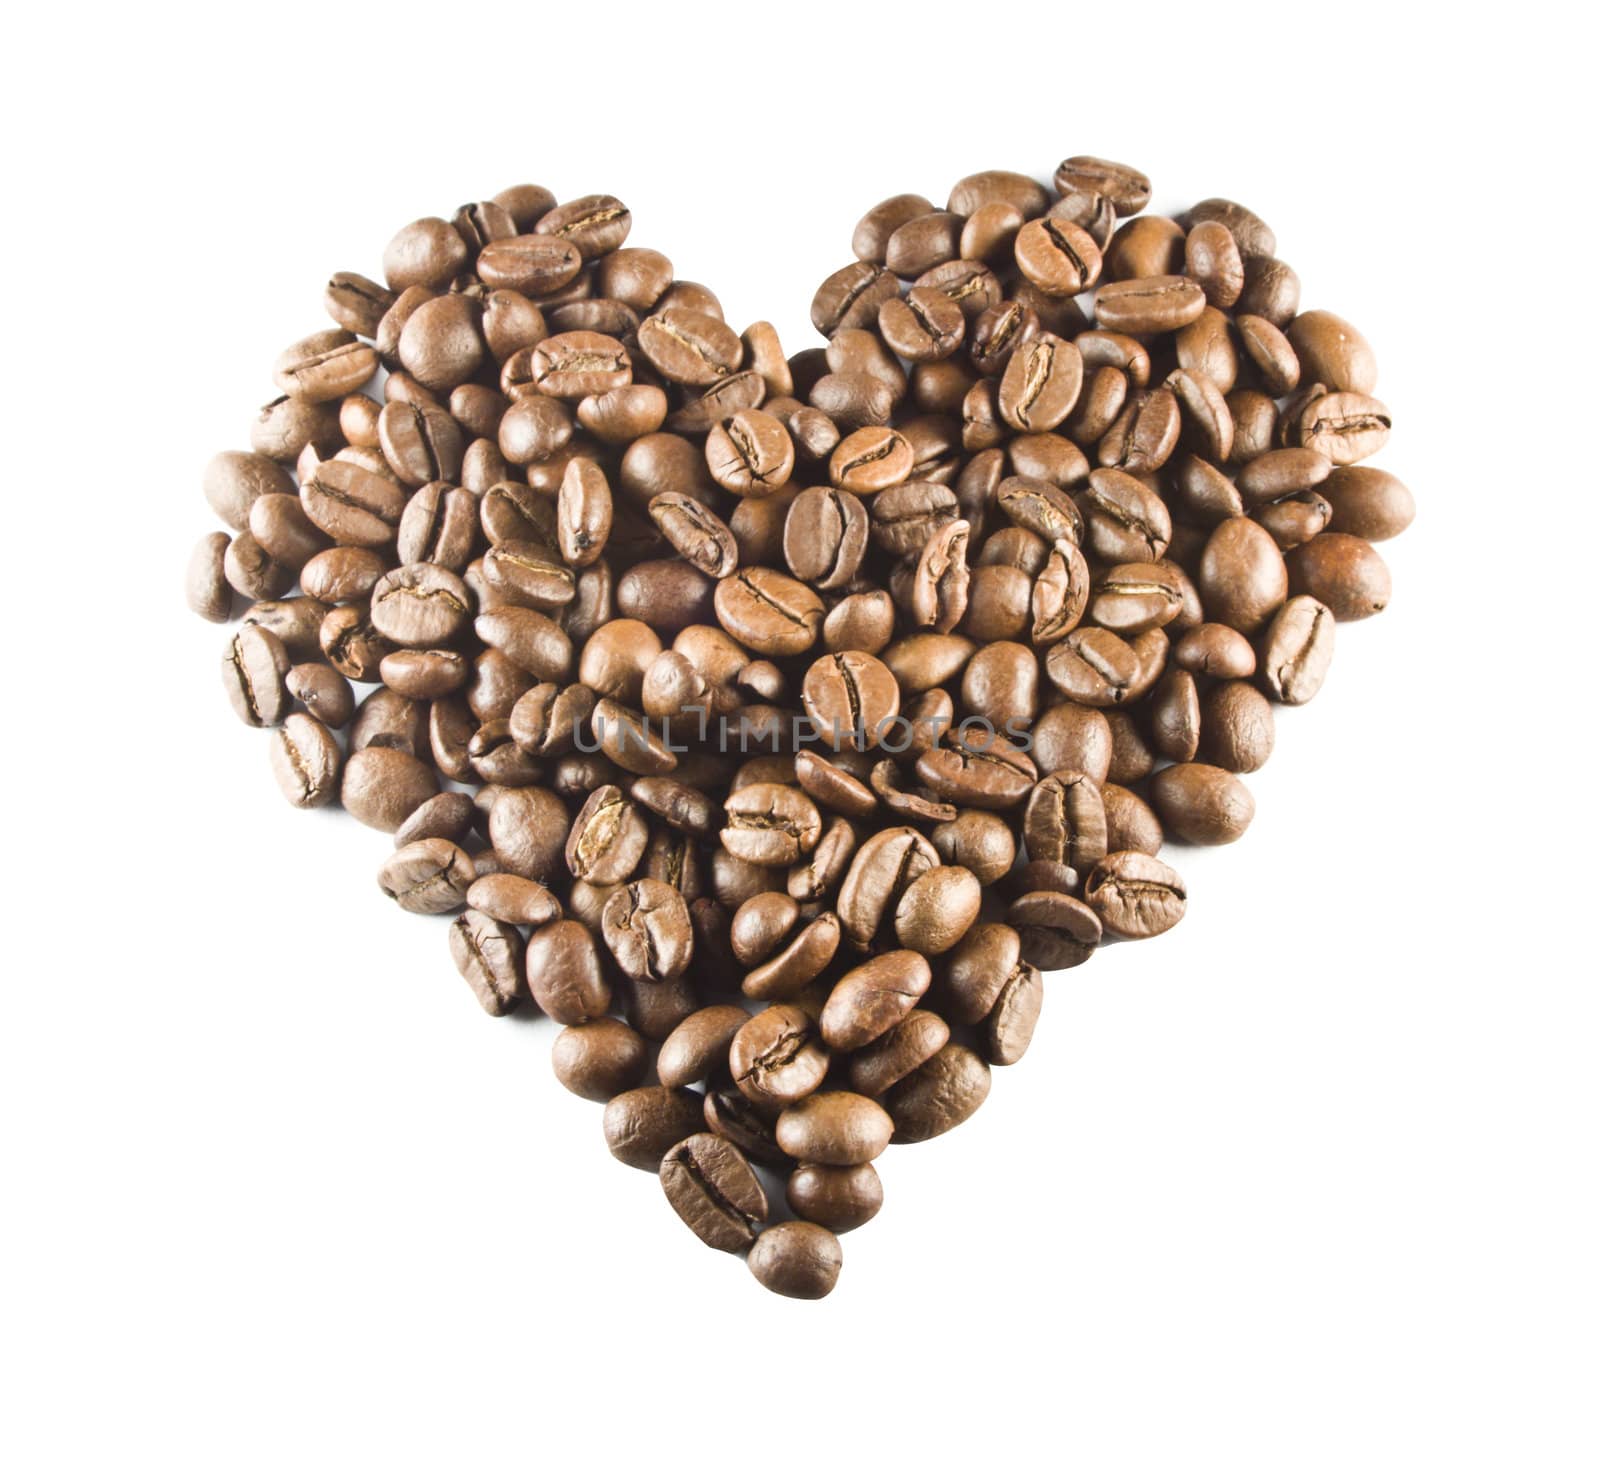 Coffee Love by smoki